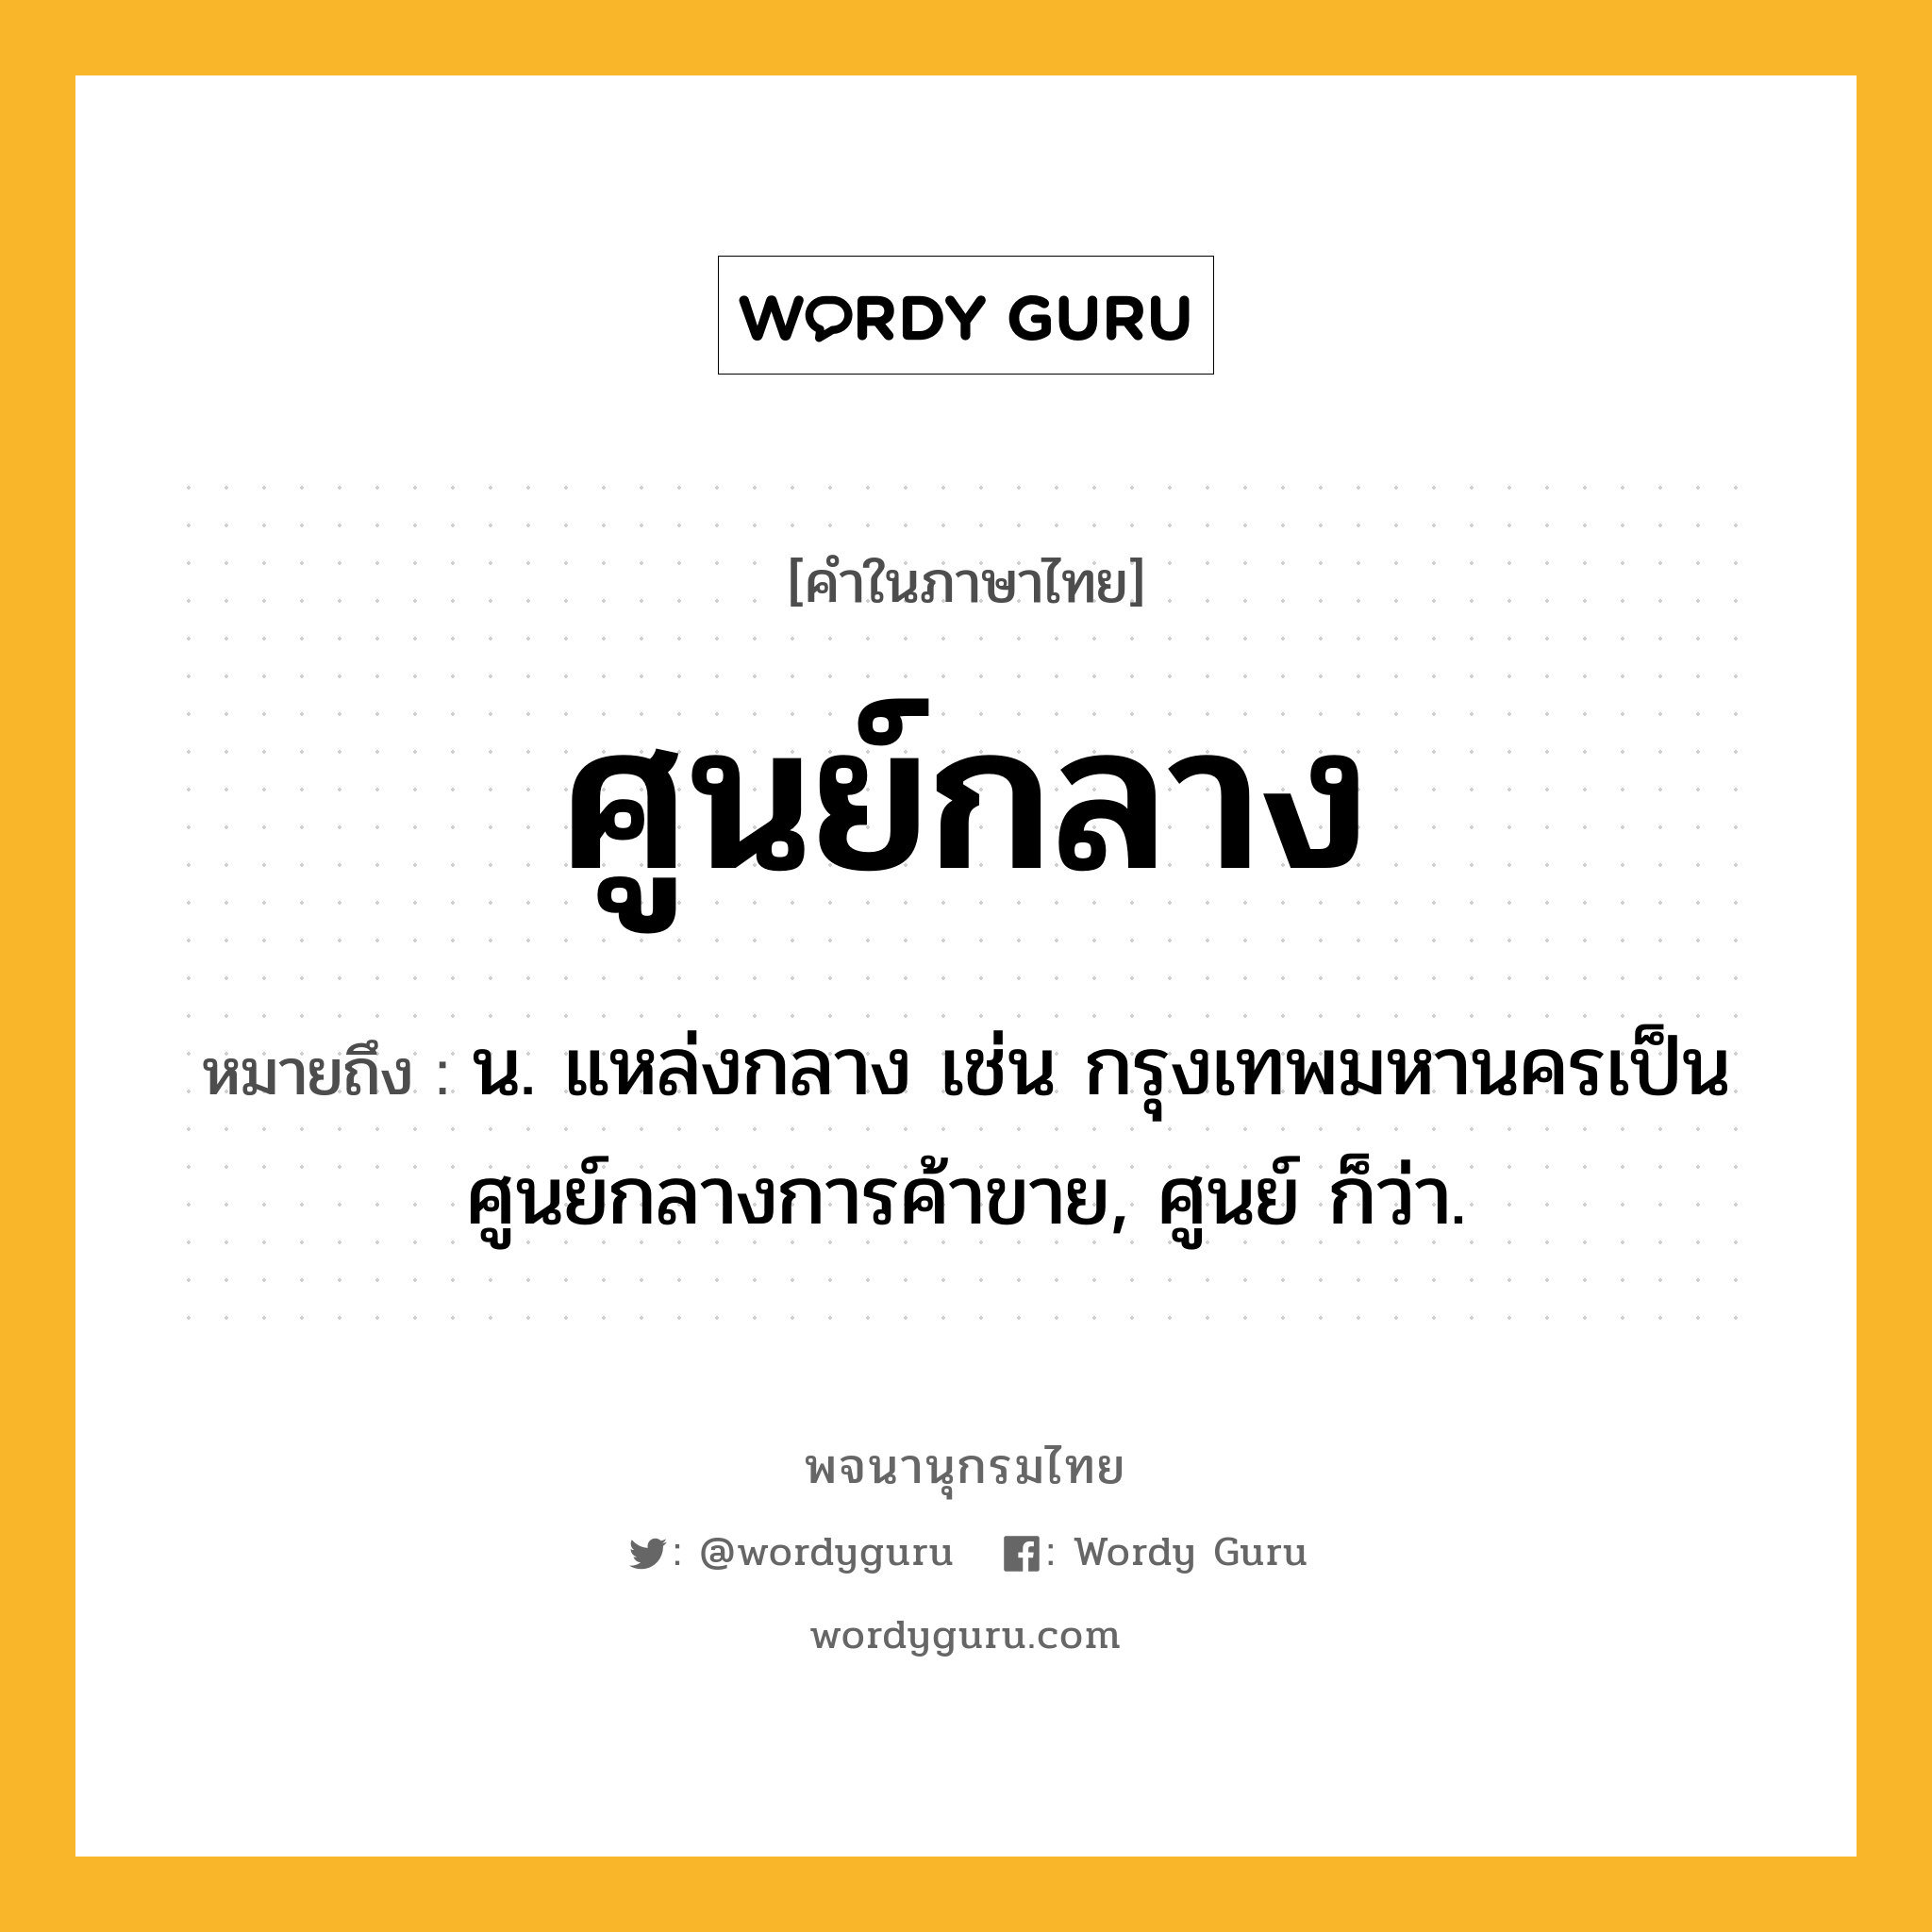 ศูนย์กลาง หมายถึงอะไร?, คำในภาษาไทย ศูนย์กลาง หมายถึง น. แหล่งกลาง เช่น กรุงเทพมหานครเป็นศูนย์กลางการค้าขาย, ศูนย์ ก็ว่า.